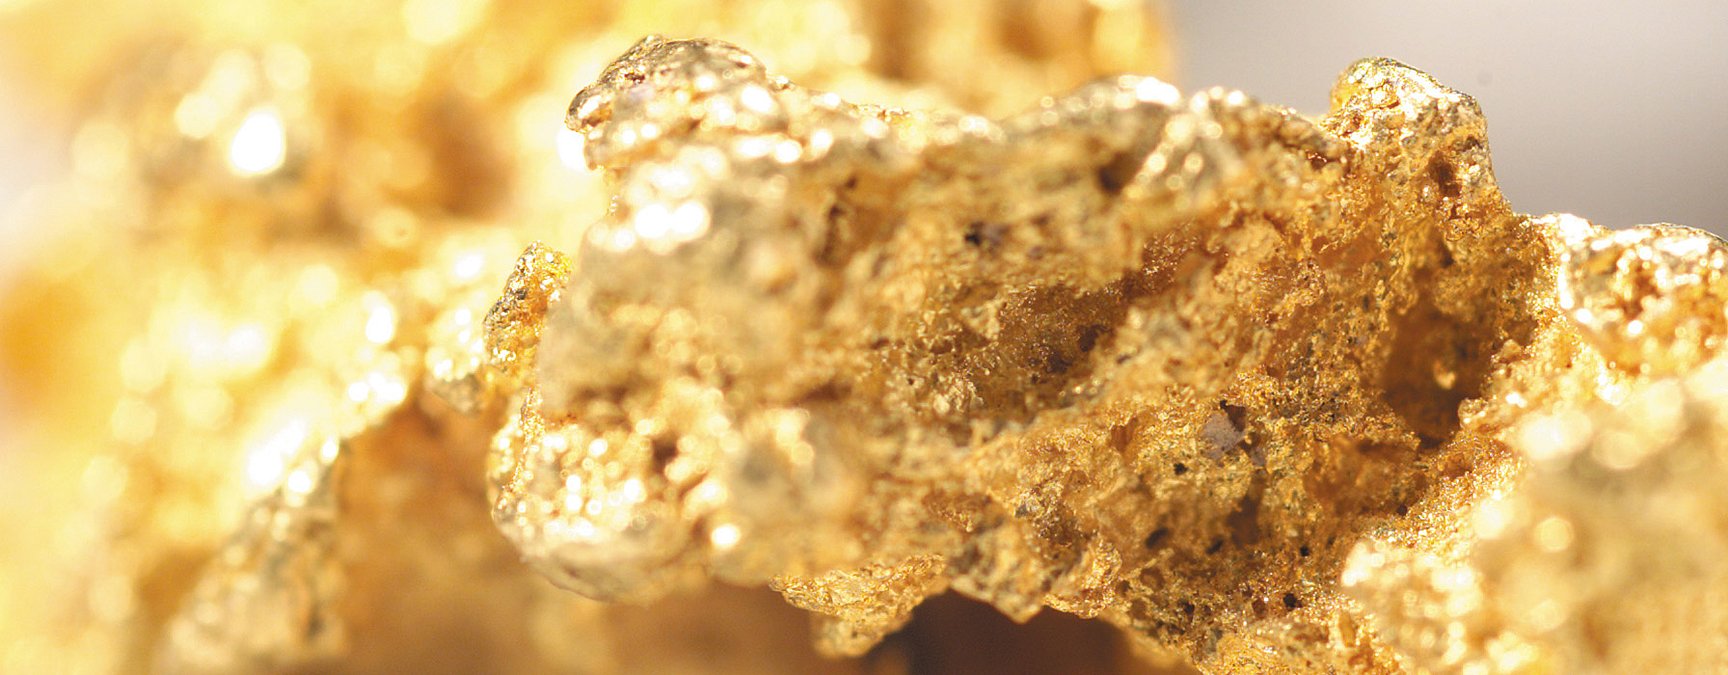 L'or : un minéral aux nombreuses vertus santé - Marie Claire